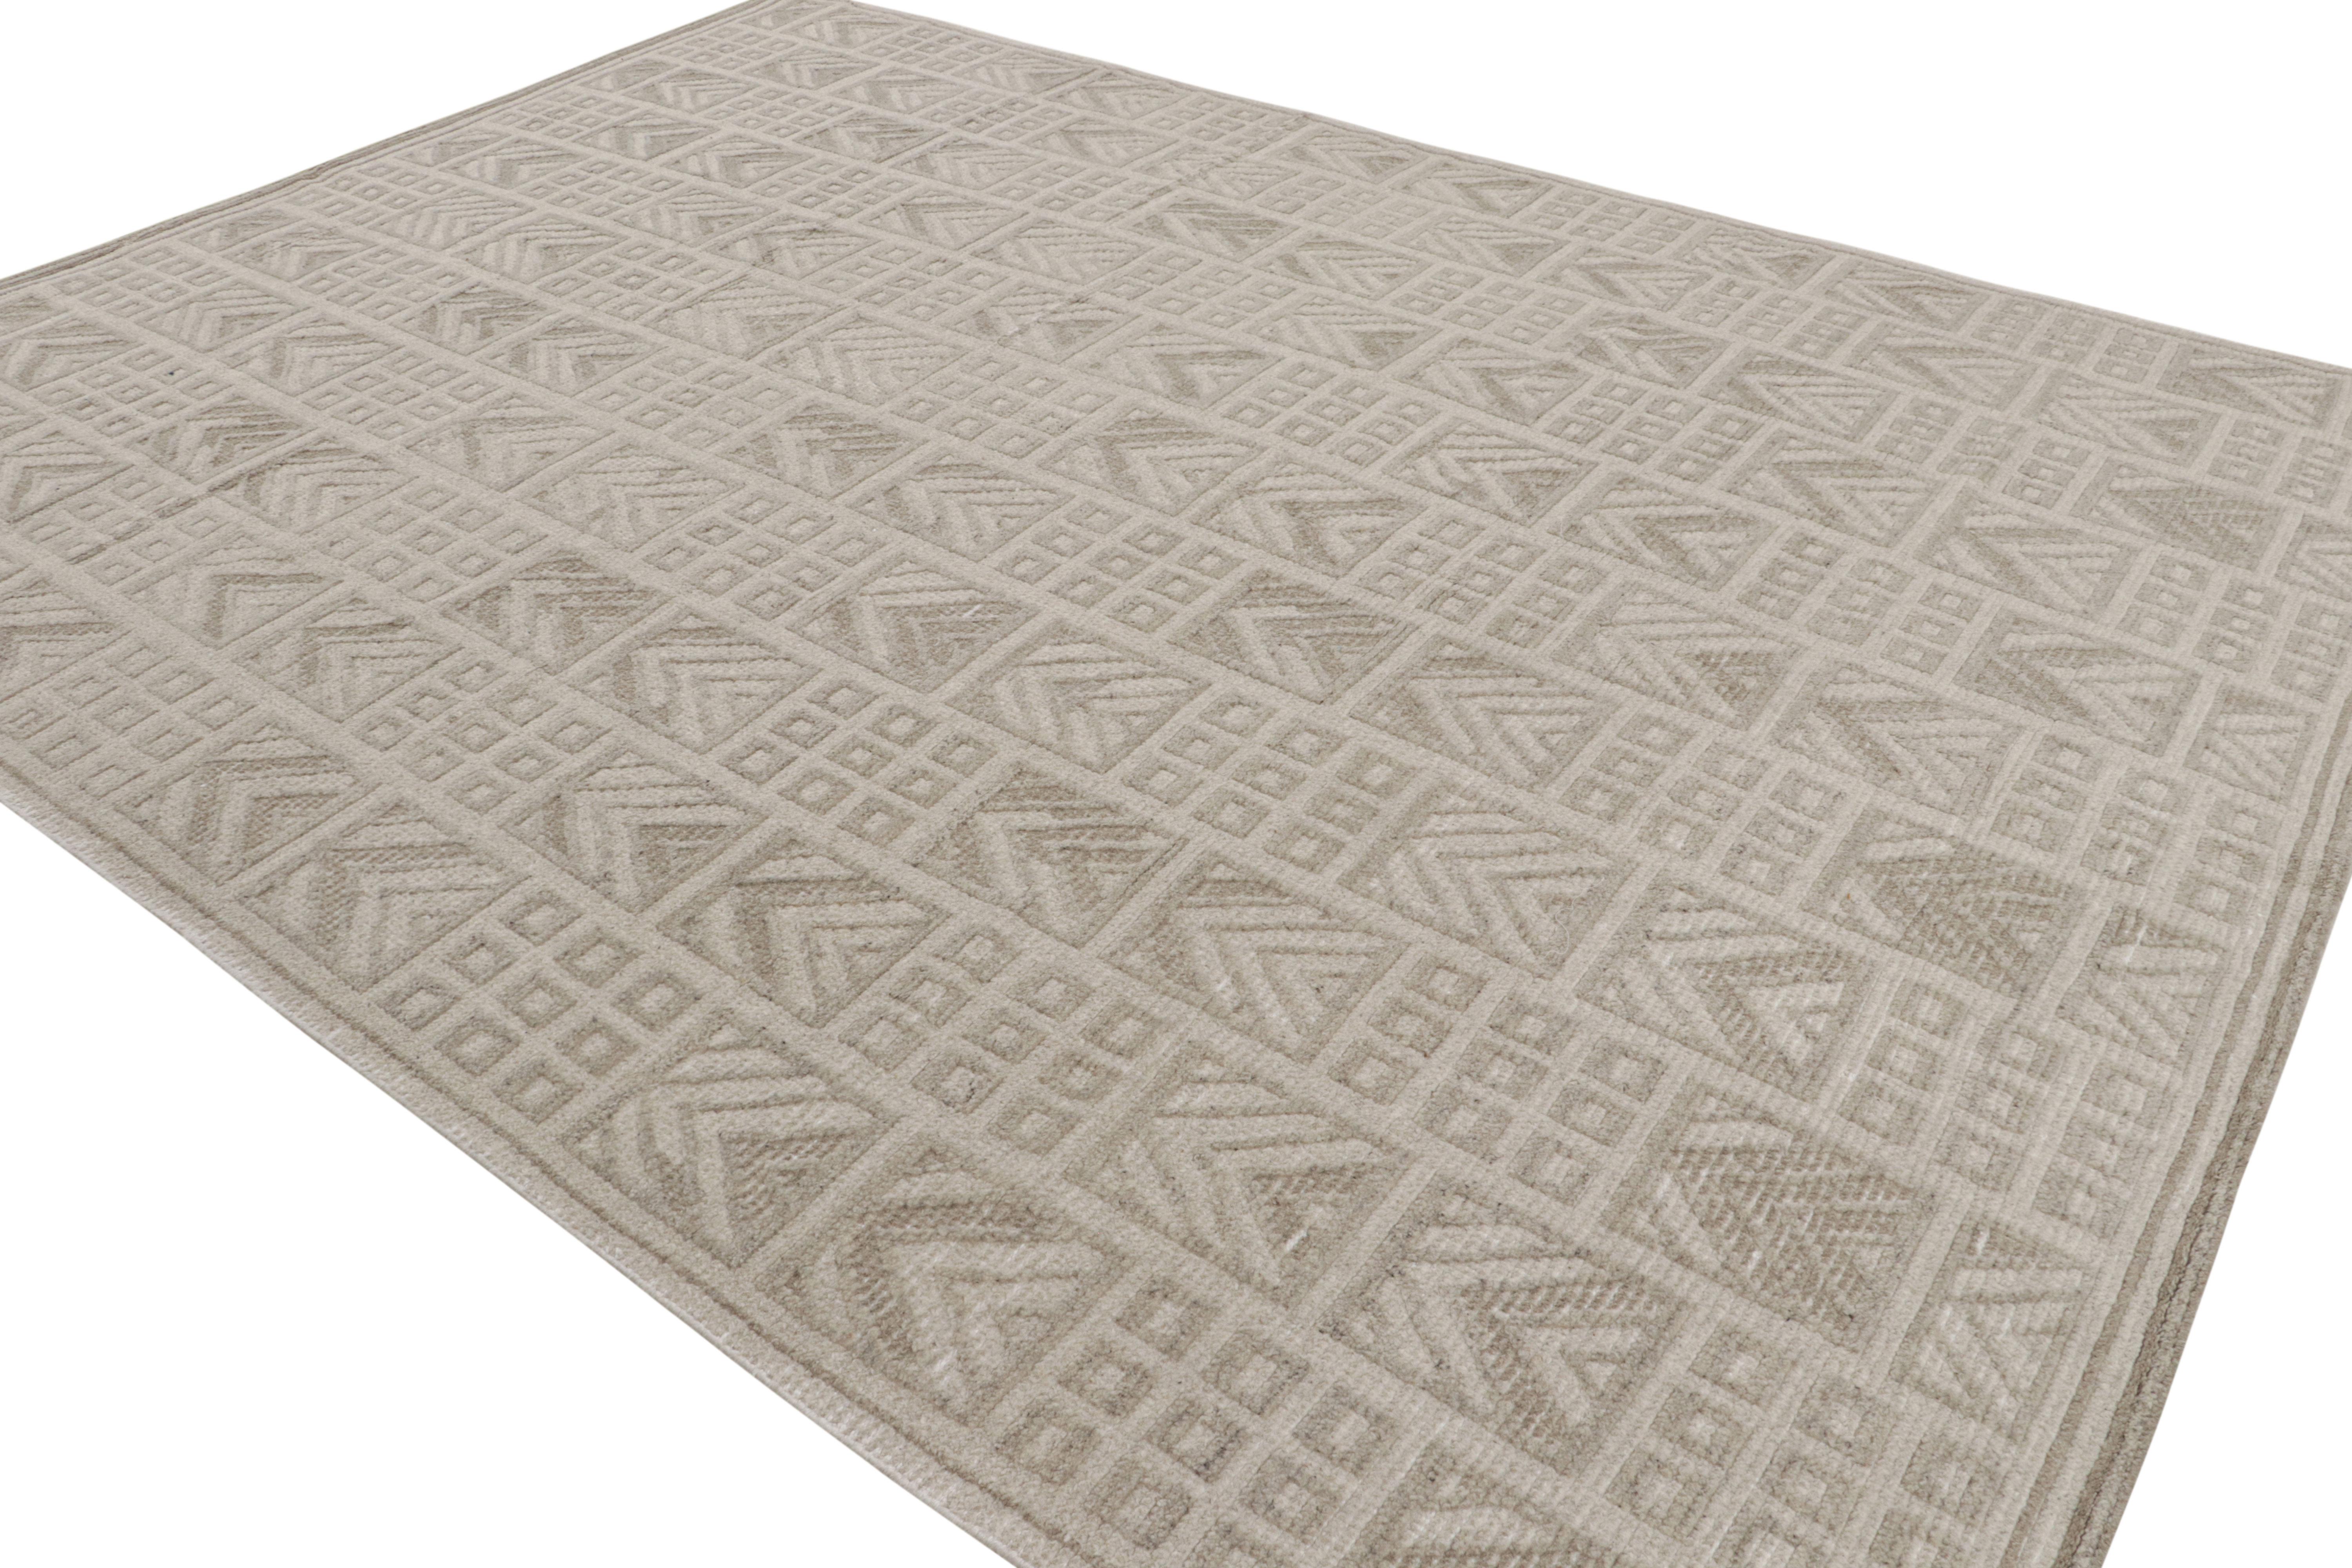 Nouveau venu dans la Collection S &New, ce tapis 9x12 en laine nouée à la main est une version contemporaine du style Rug & Kilim du milieu du siècle et du style déco suédois.

Sur le Design :

L'utilisation de fils naturels non teints permet